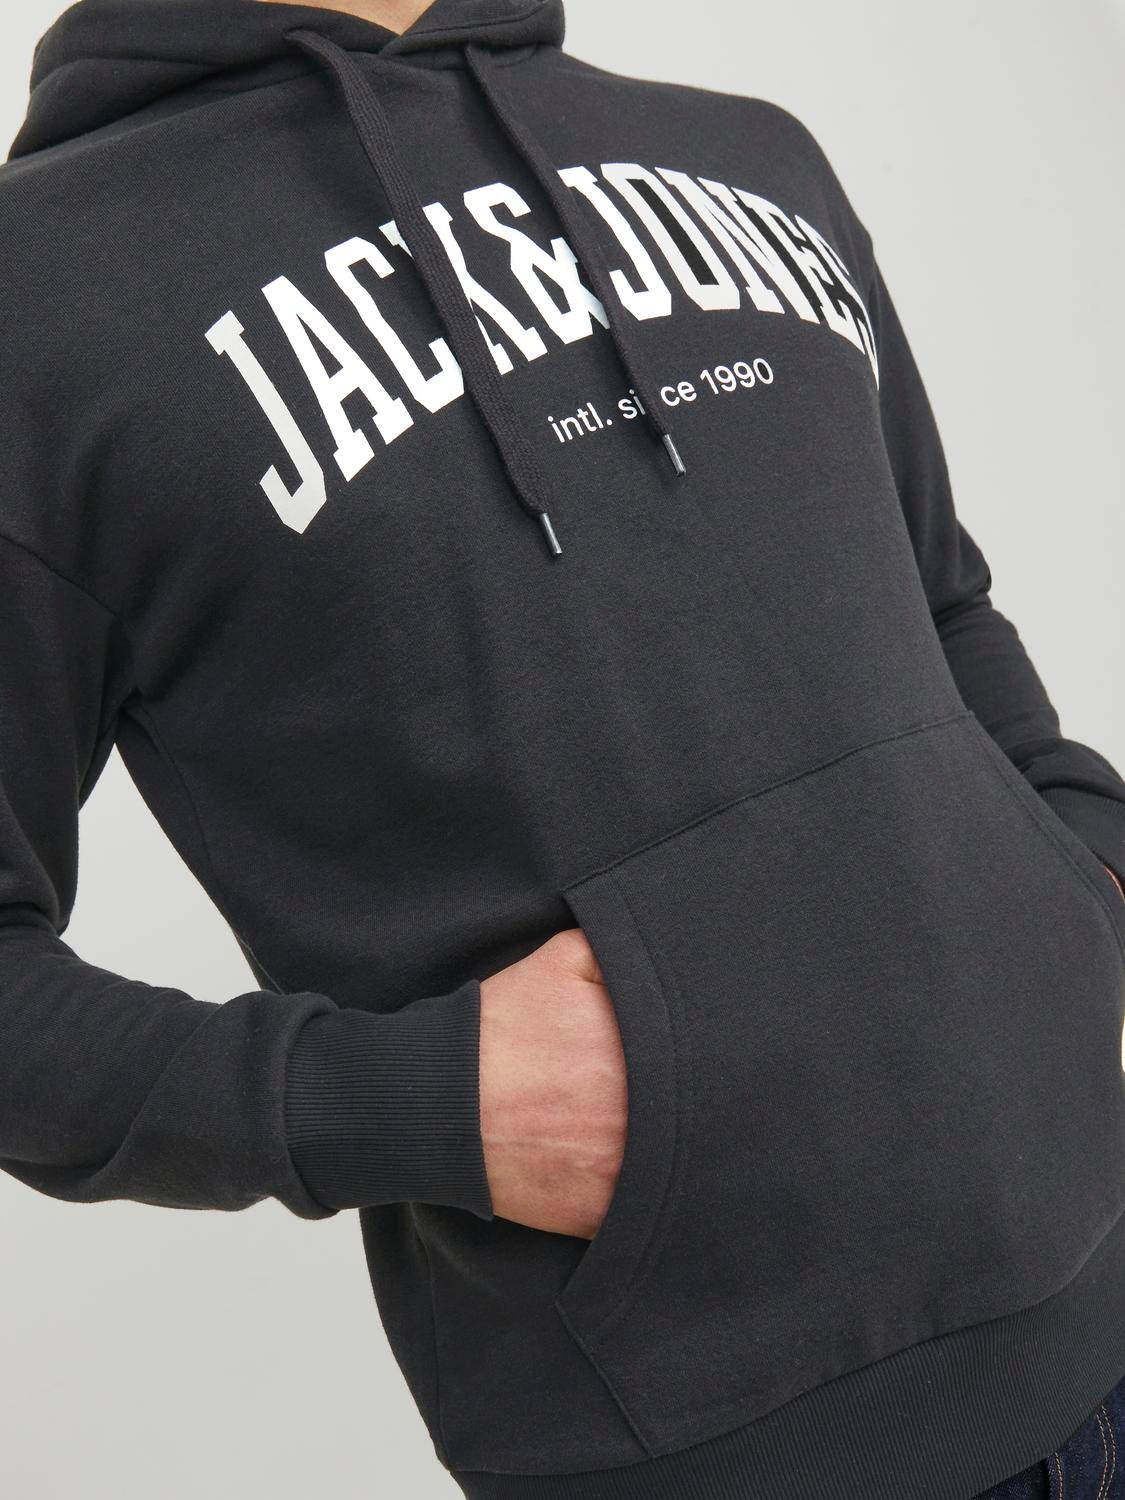 Jack & Jones Logo Hettegenser -Black - 12236513